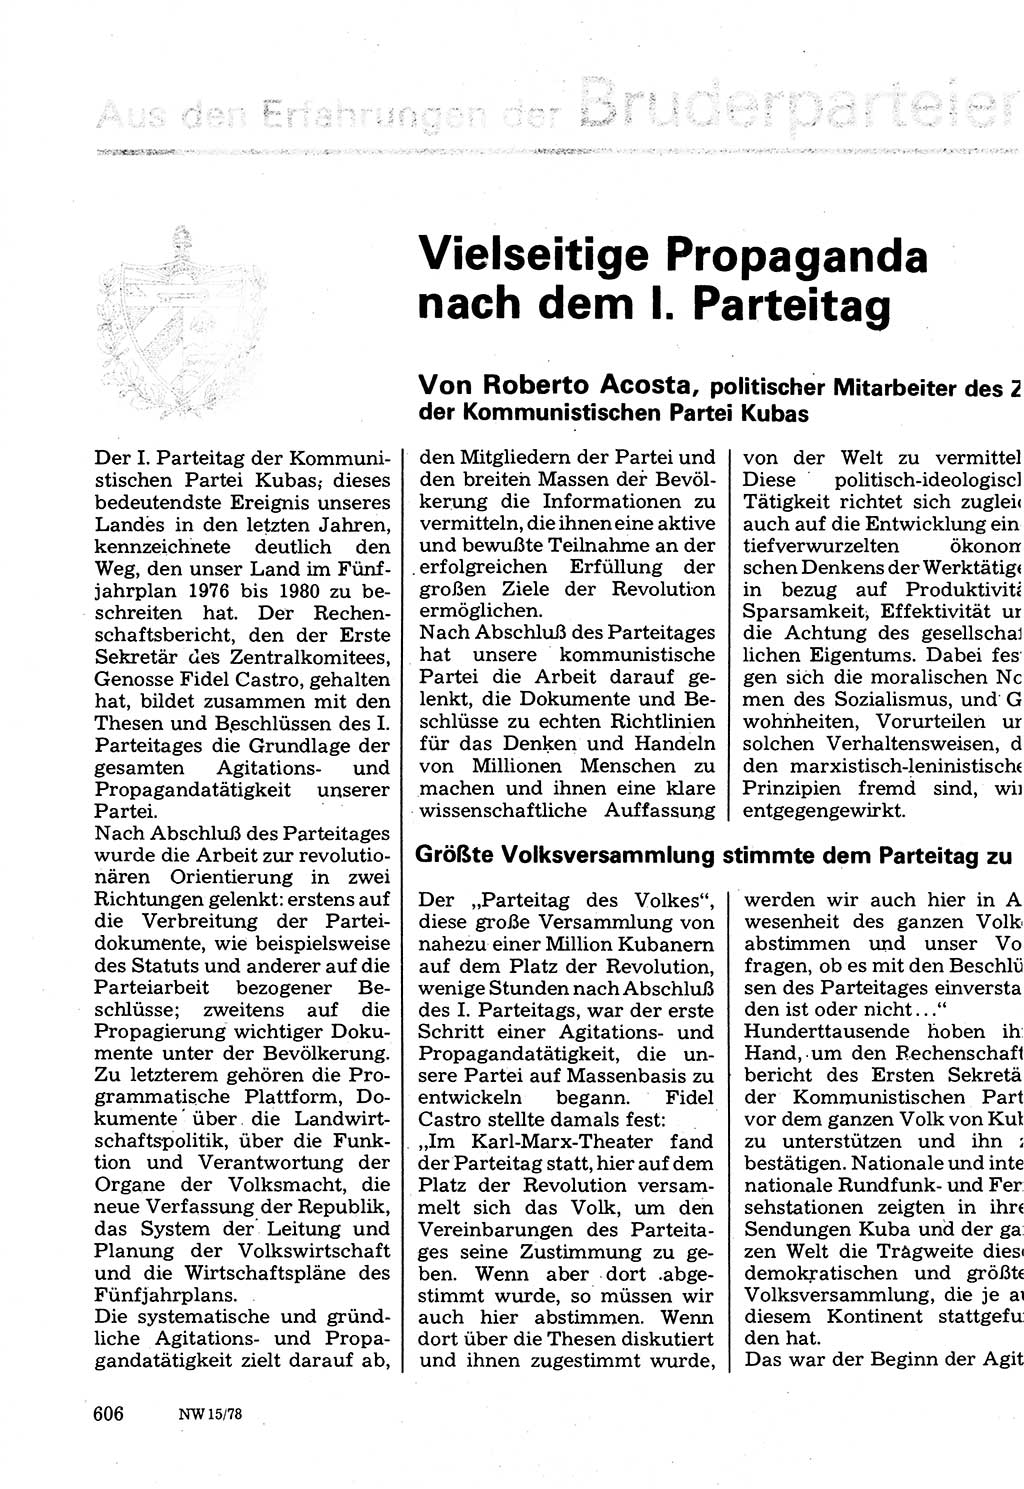 Neuer Weg (NW), Organ des Zentralkomitees (ZK) der SED (Sozialistische Einheitspartei Deutschlands) für Fragen des Parteilebens, 33. Jahrgang [Deutsche Demokratische Republik (DDR)] 1978, Seite 606 (NW ZK SED DDR 1978, S. 606)